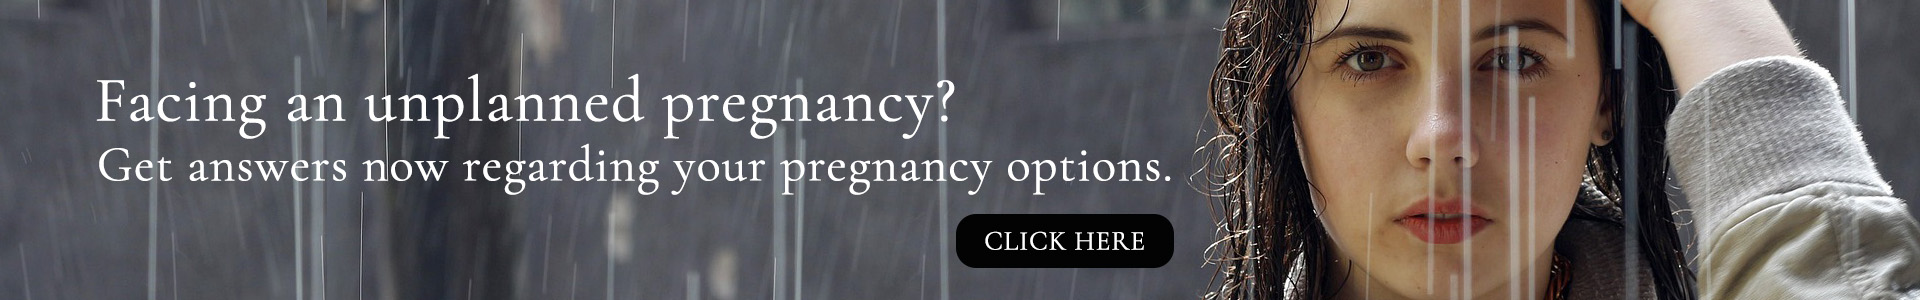 Pregnant? Need Help? Visit Options-AZ.com